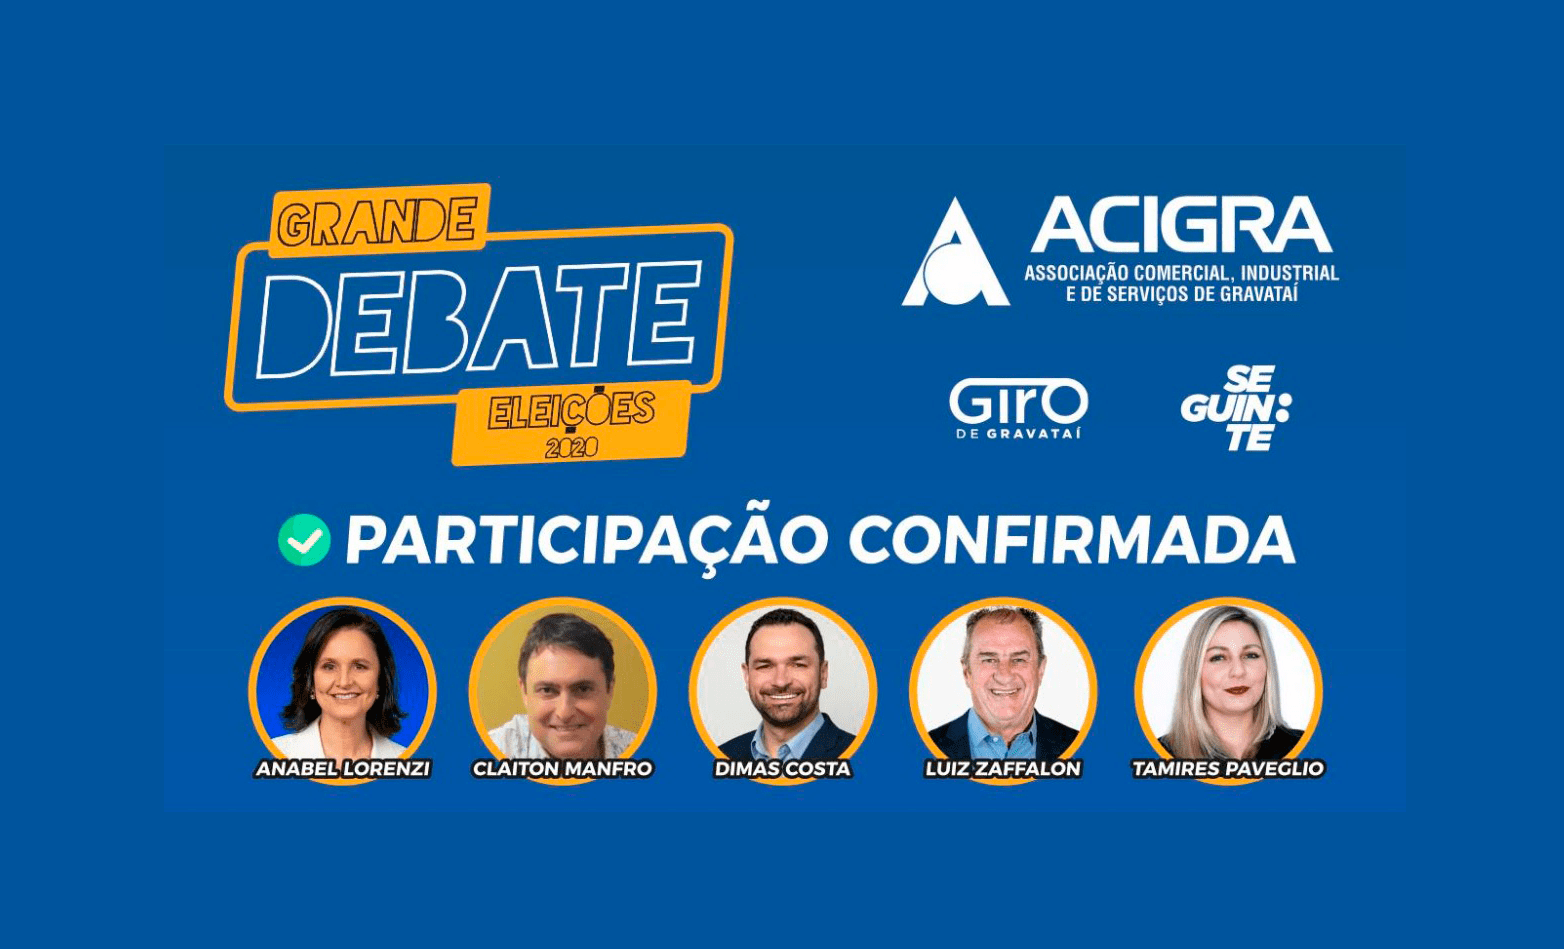 Giro de Gravataí e Acigra transmitem hoje debate com os candidatos à Prefeitura de Gravataí